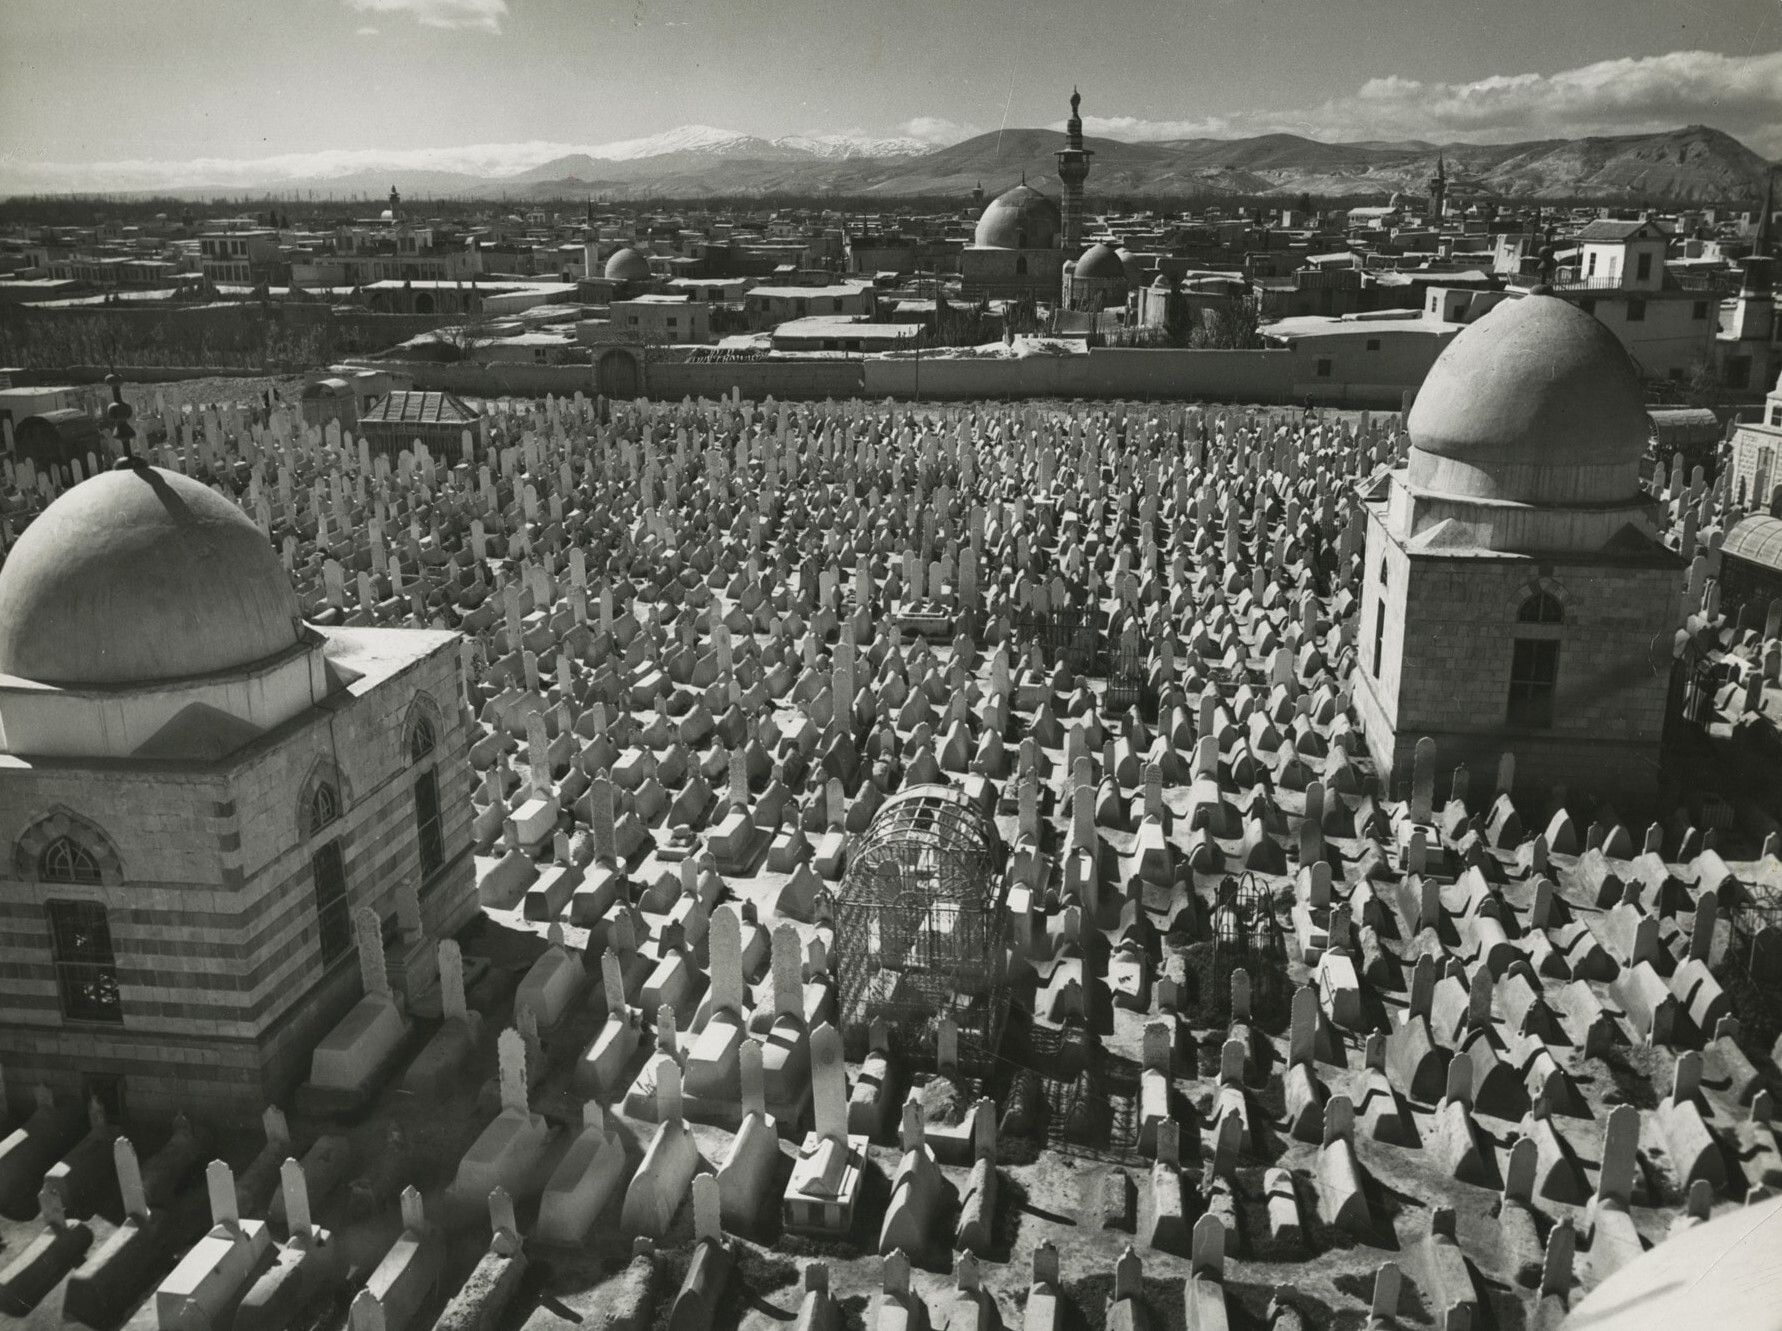 Вид на кладбище 11 века в Баб-Згере на юго-восточной стороне города, Дамасус, Сирия 1940 год. Фотограф Маргарет Бурк-Уайт